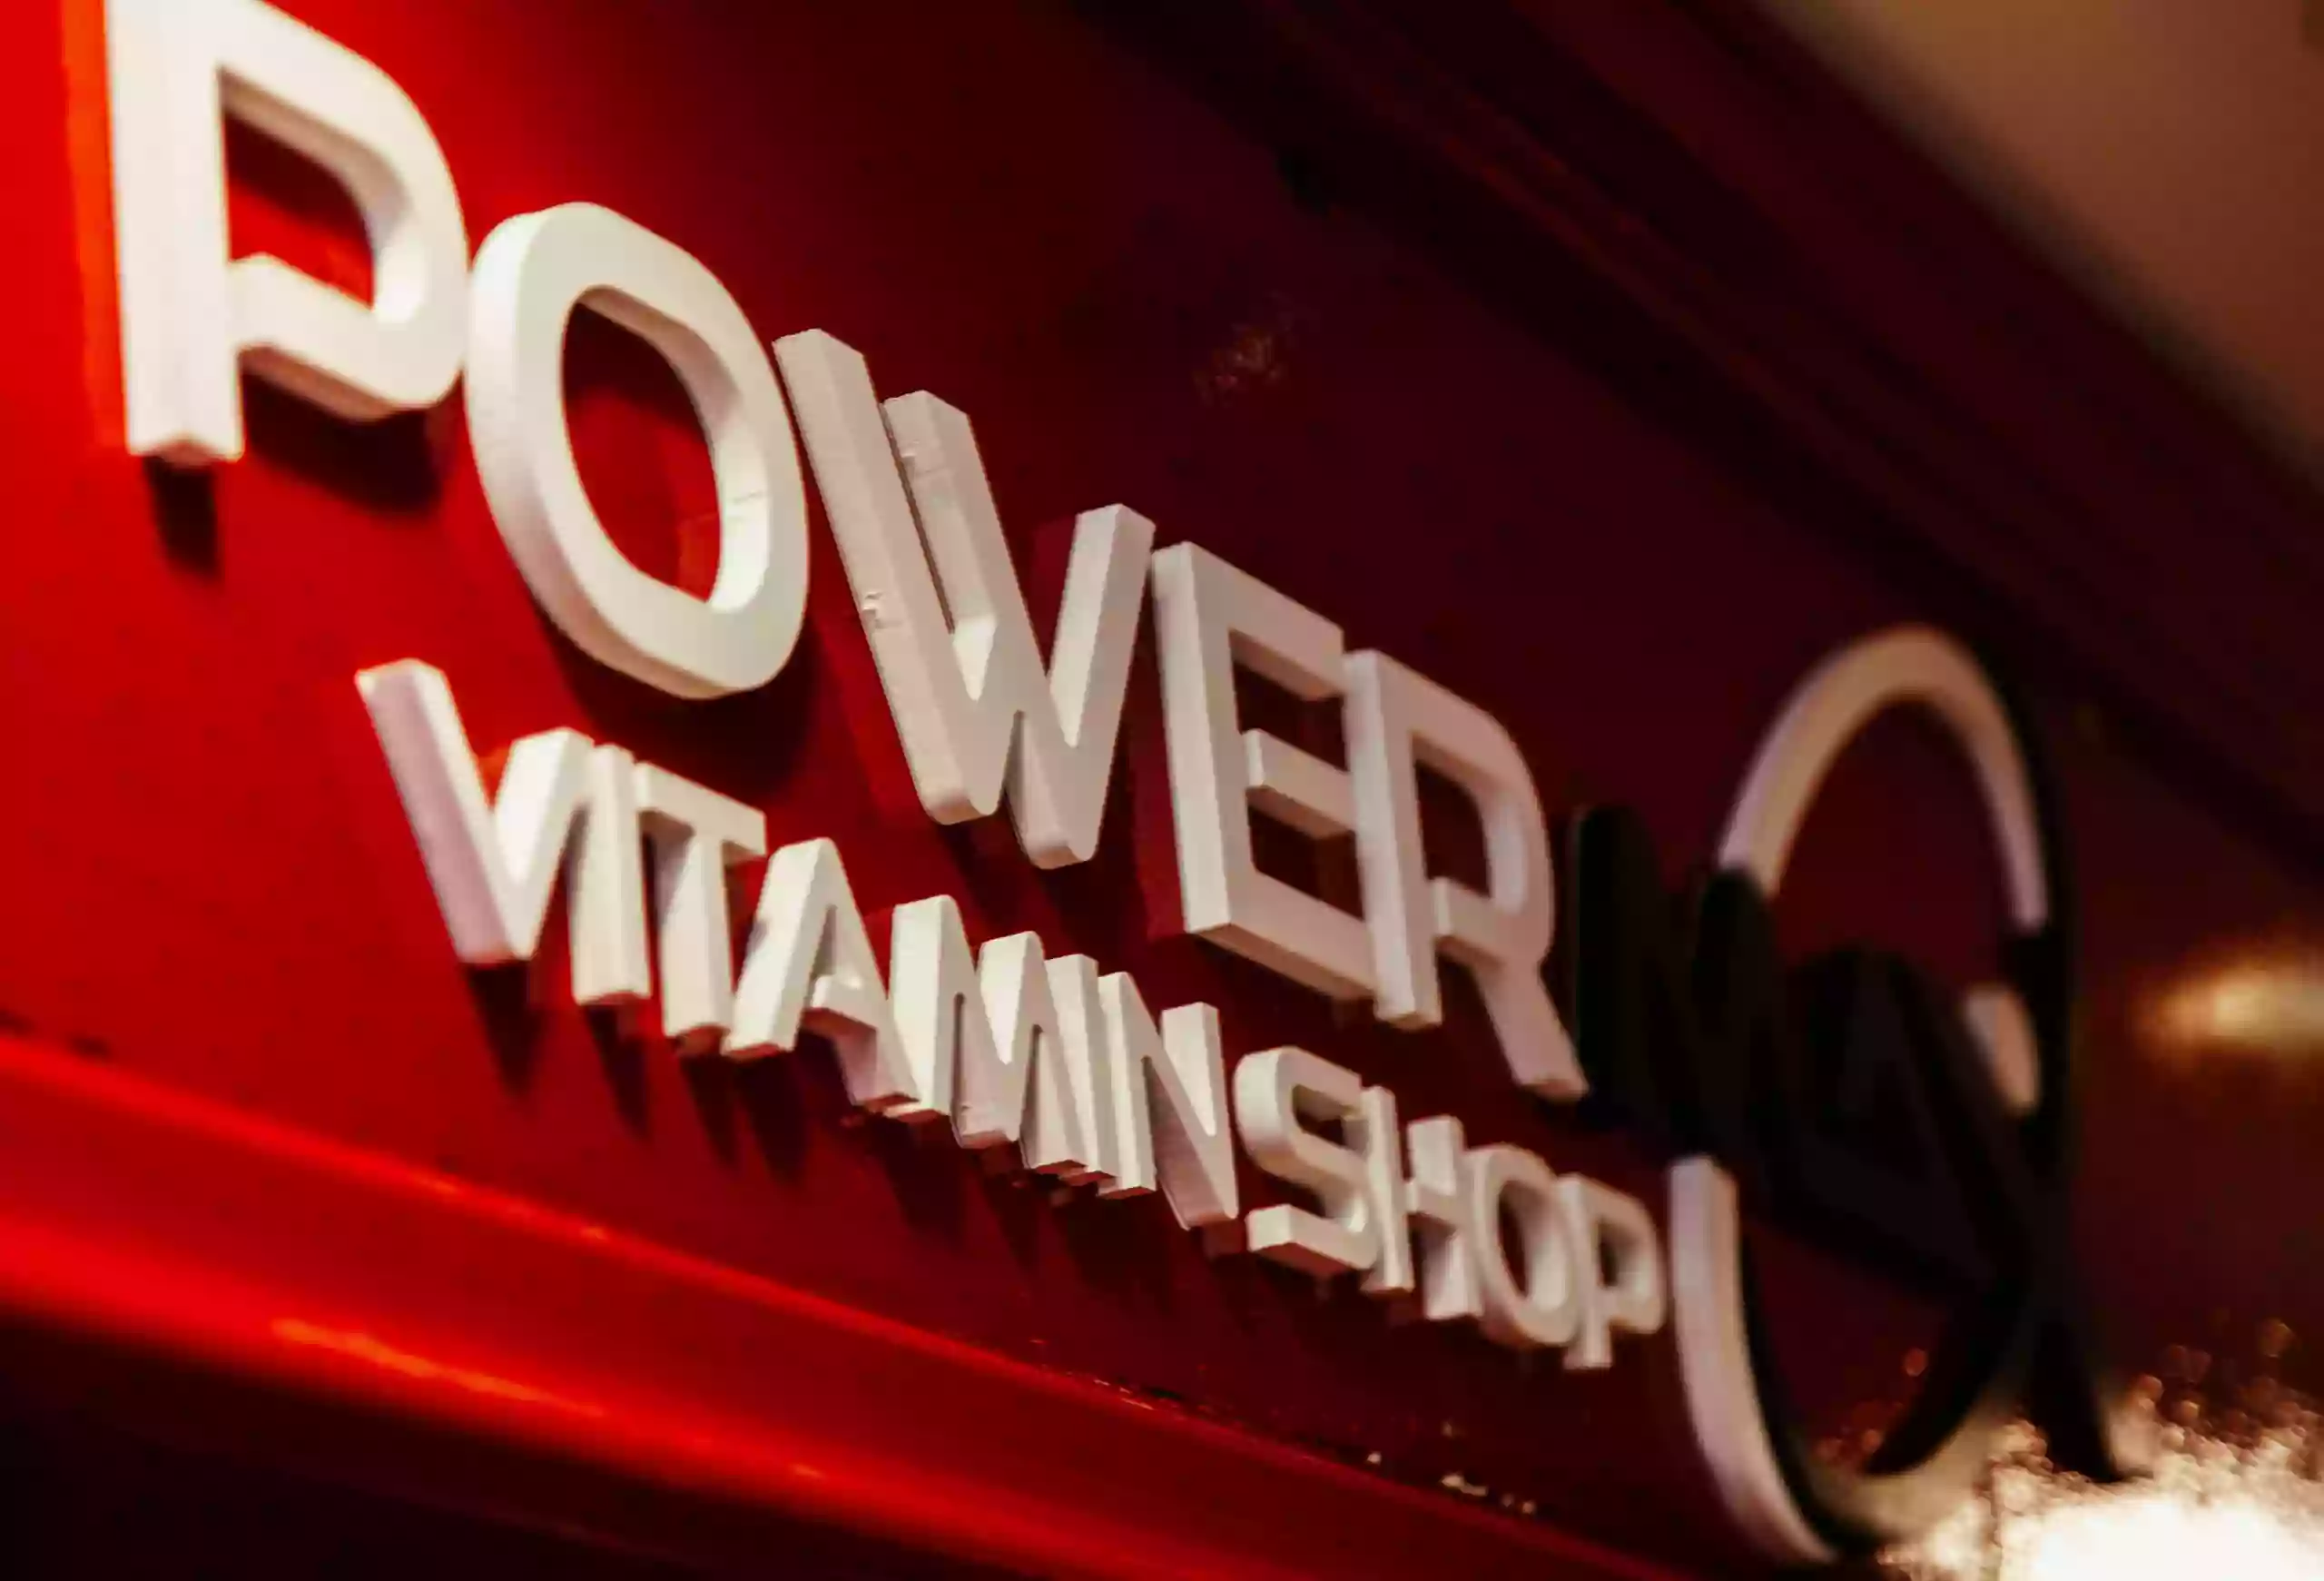 Powermax Vitamin Shop